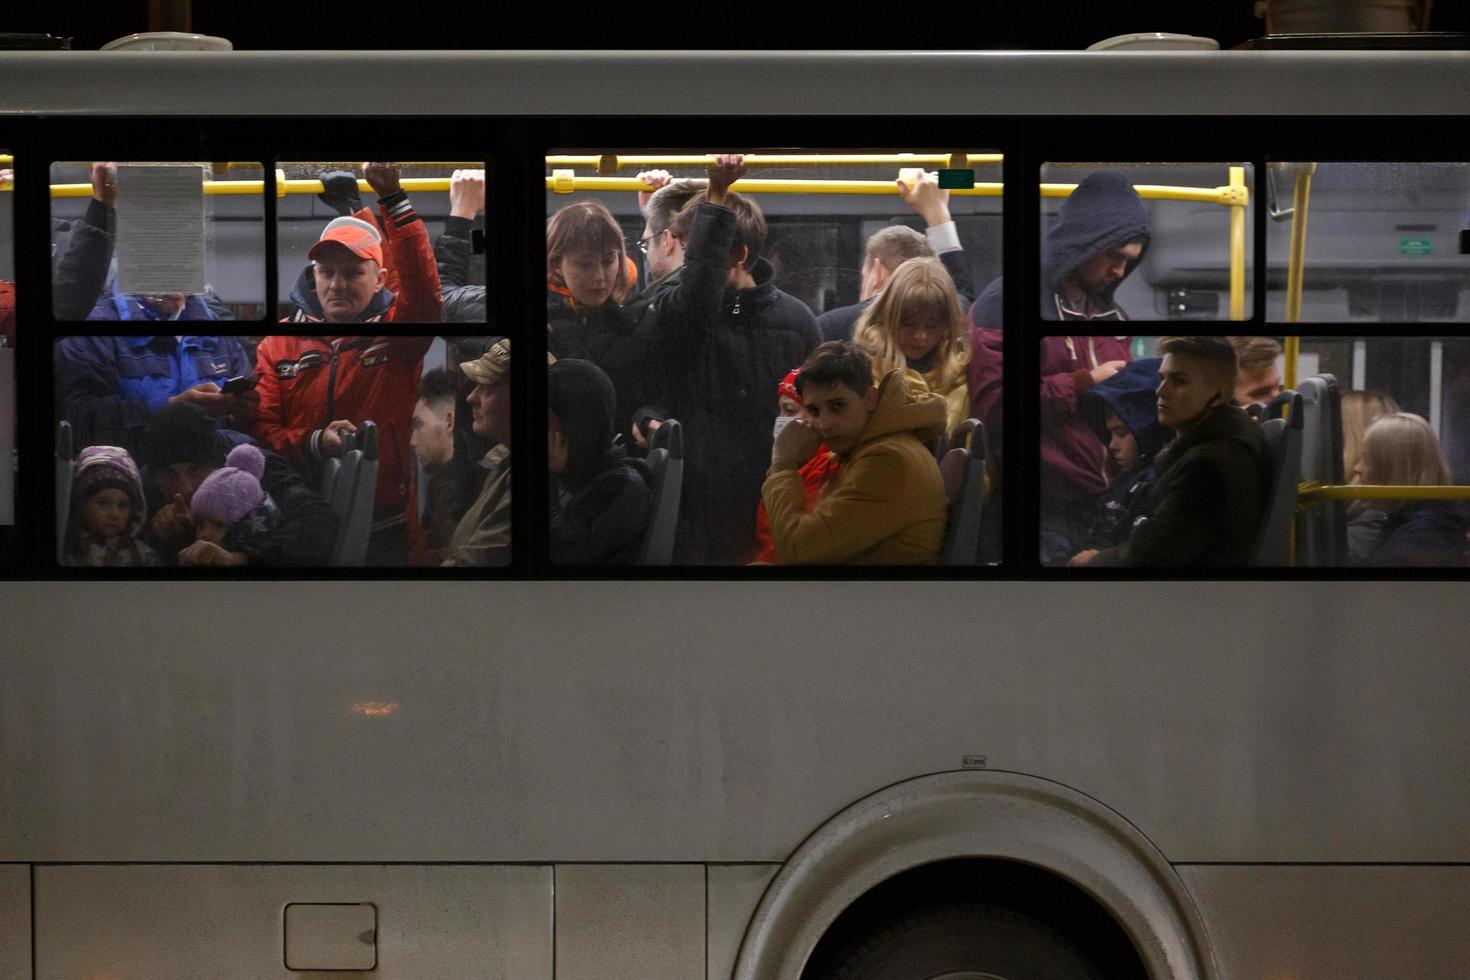 tula, russie 9 mai 2021 foule de personnes dans un bus public blanc la nuit de printemps, vue latérale de l'extérieur photo